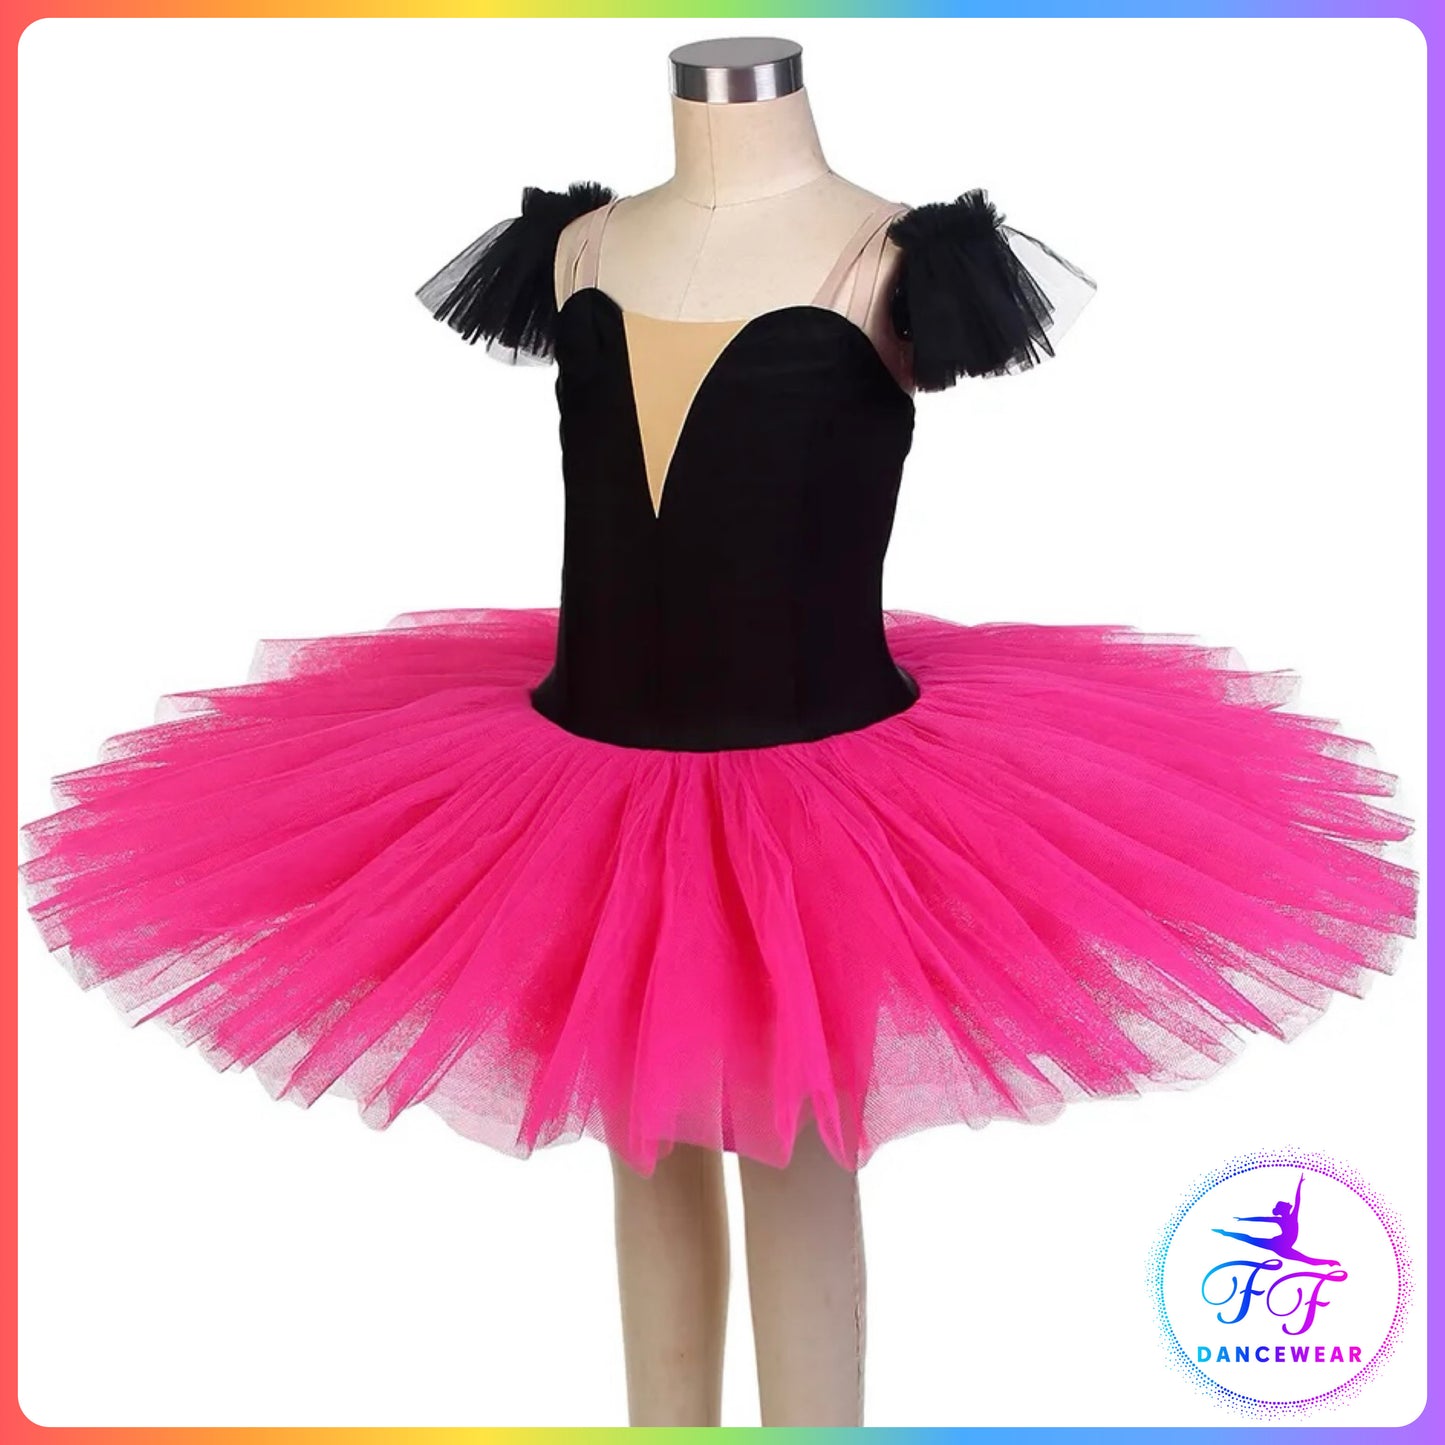 Black Velvet & Pink Stretch Pancake Ballet Tutu